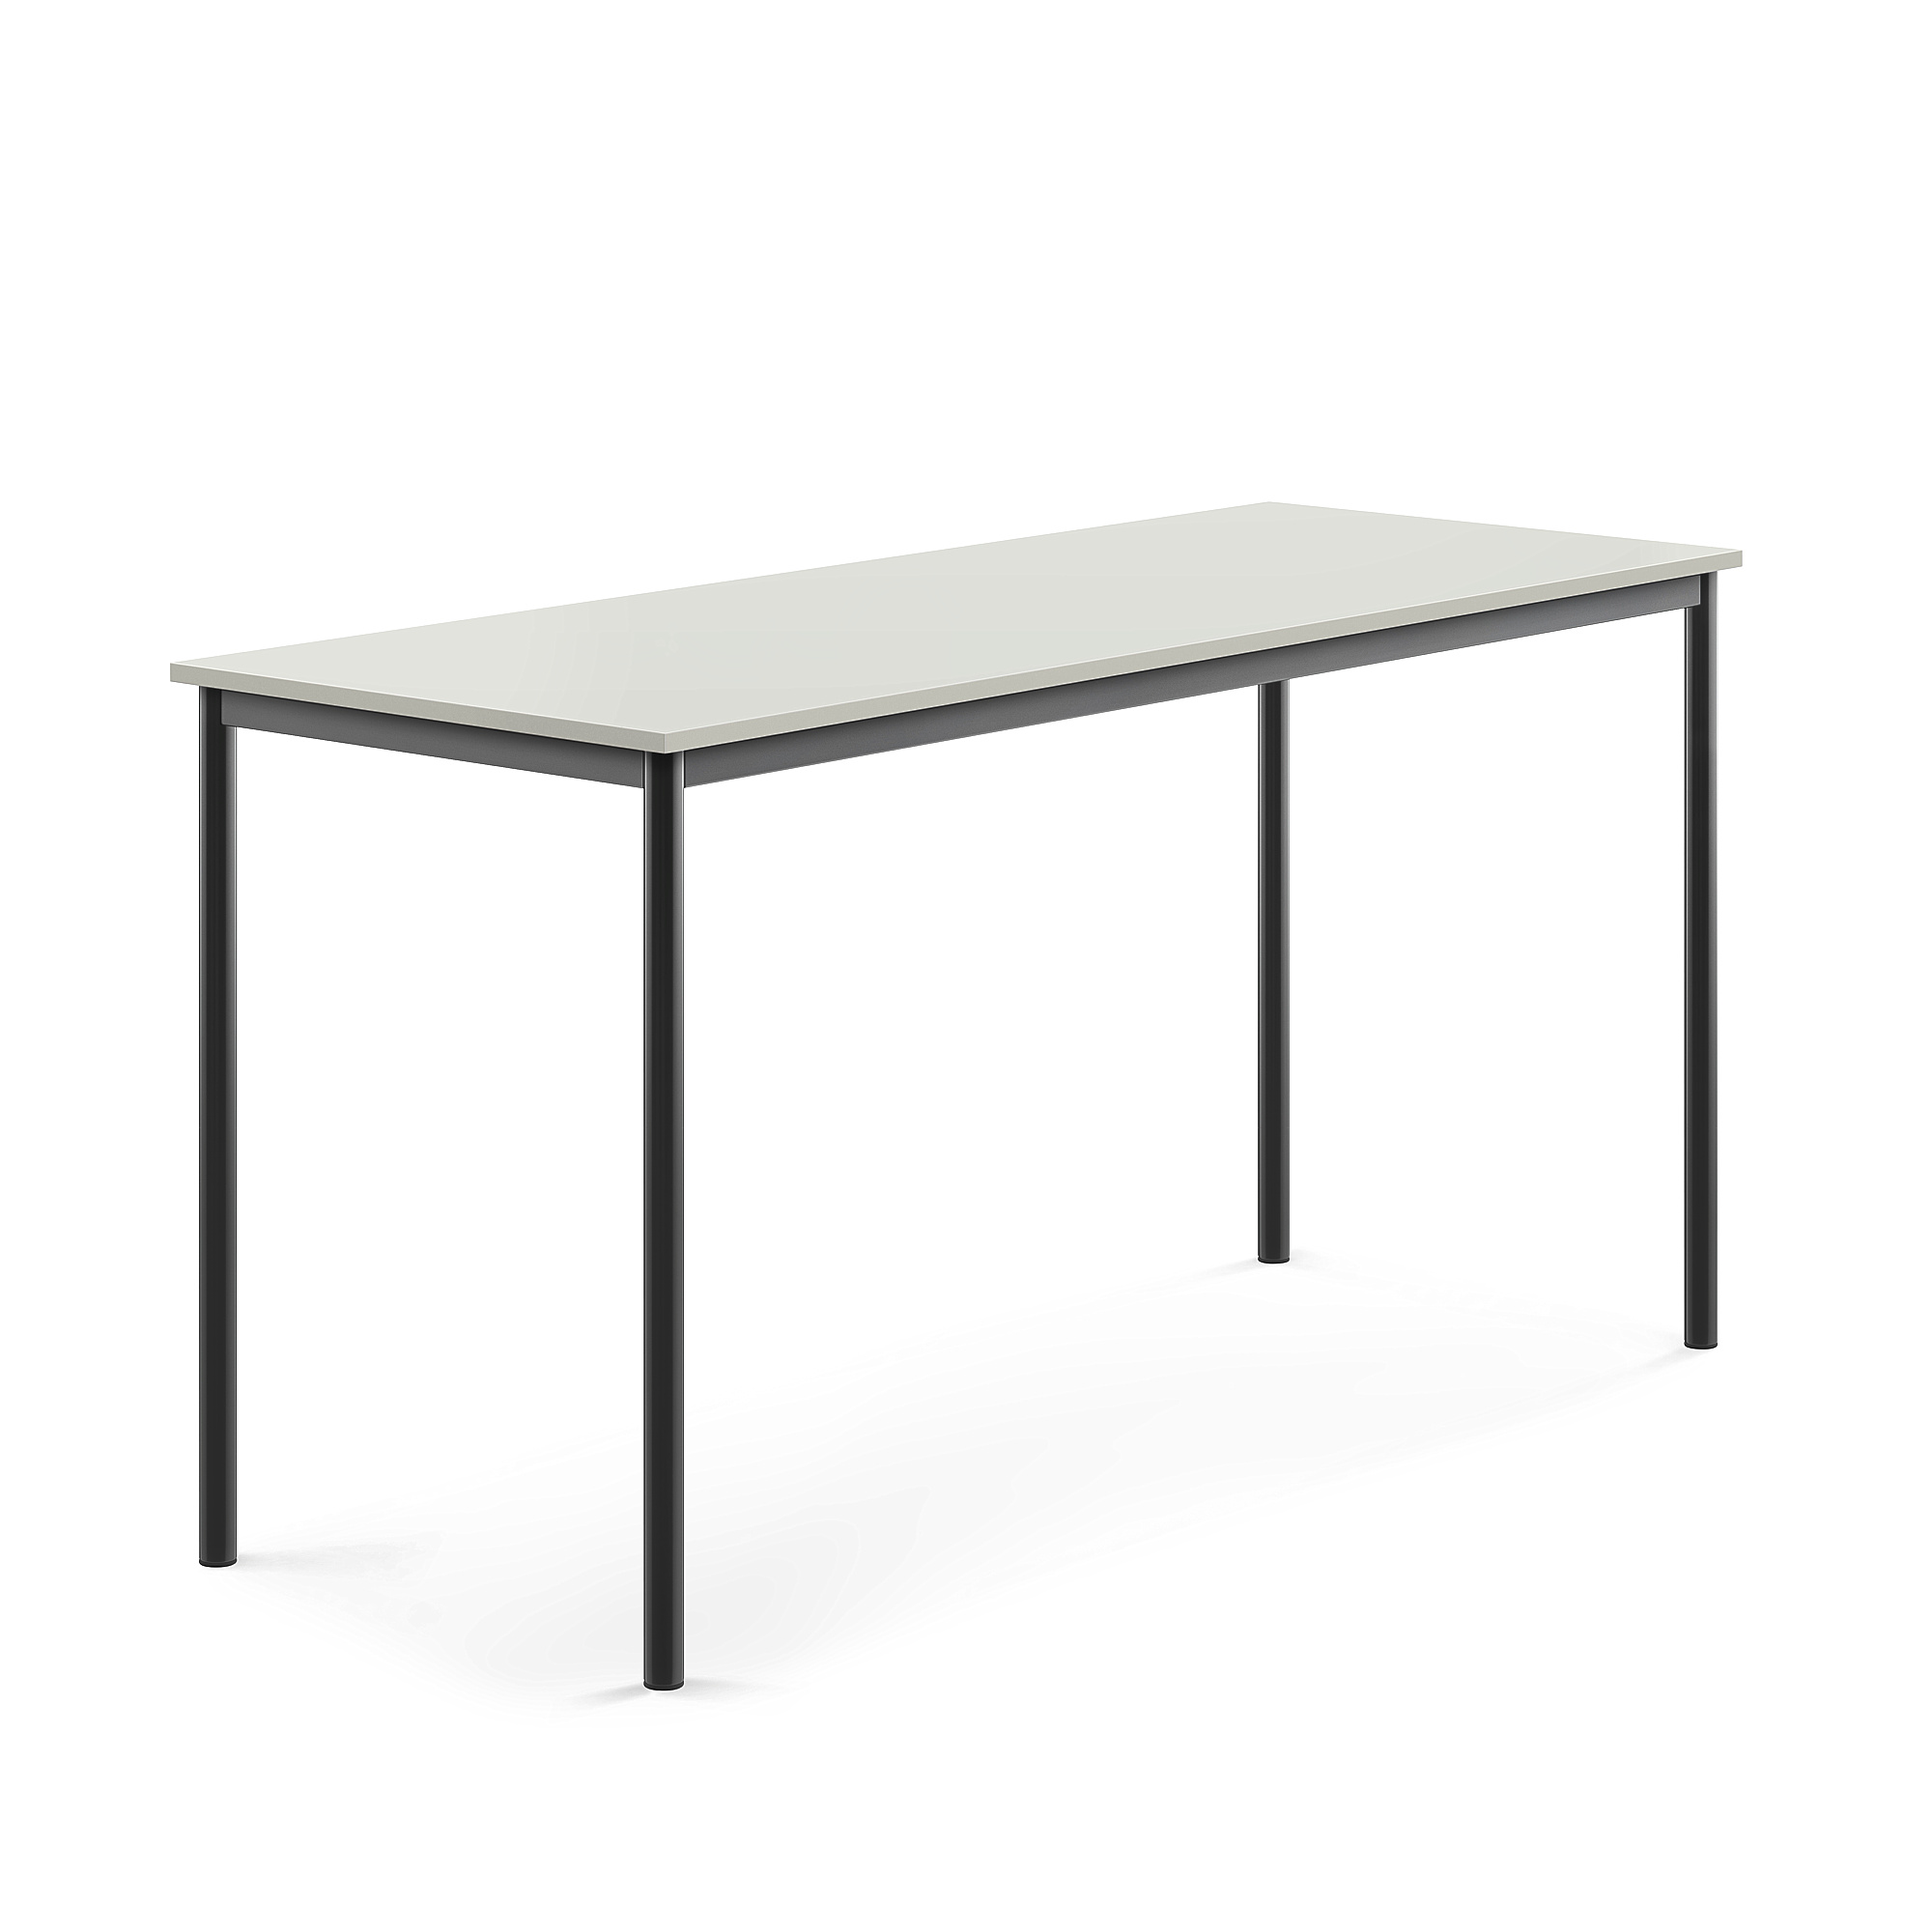 Stůl BORÅS, 1800x700x900 mm, antracitově šedé nohy, HPL deska, šedá